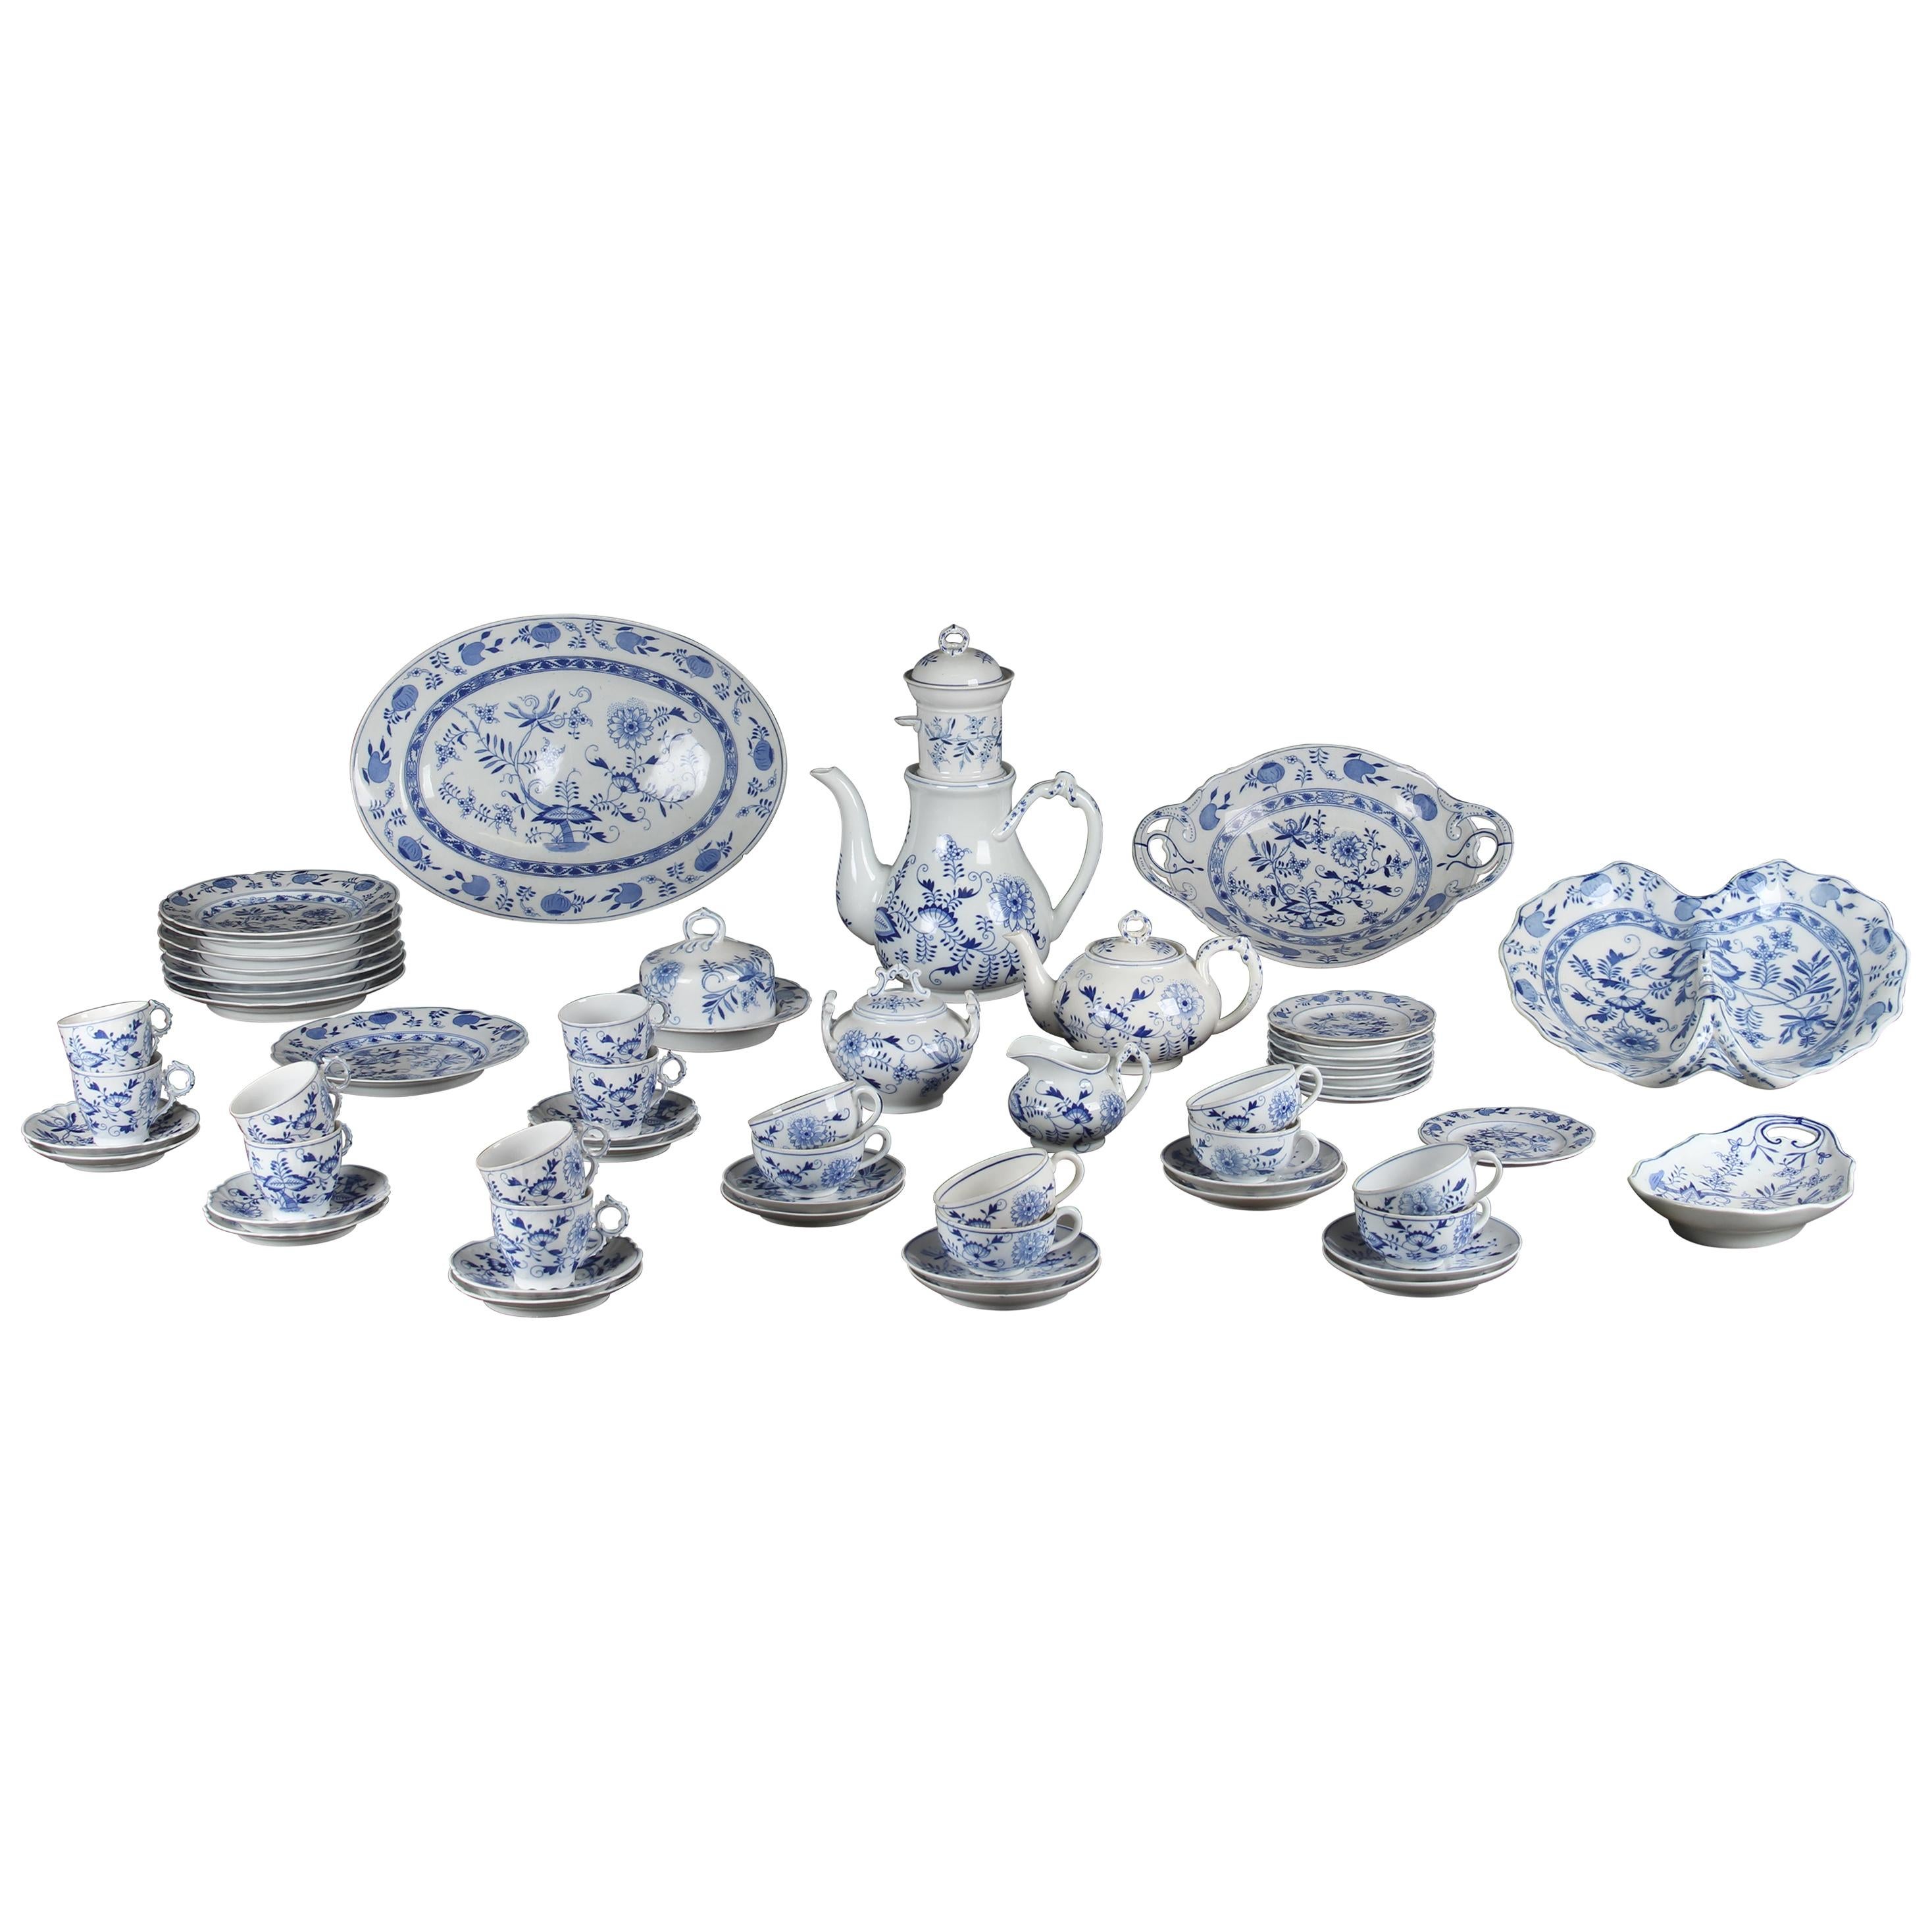 Rare Dutch Louis Regout Large 60-Piece Porcelain Blue Onion Table Service, 1890 For Sale